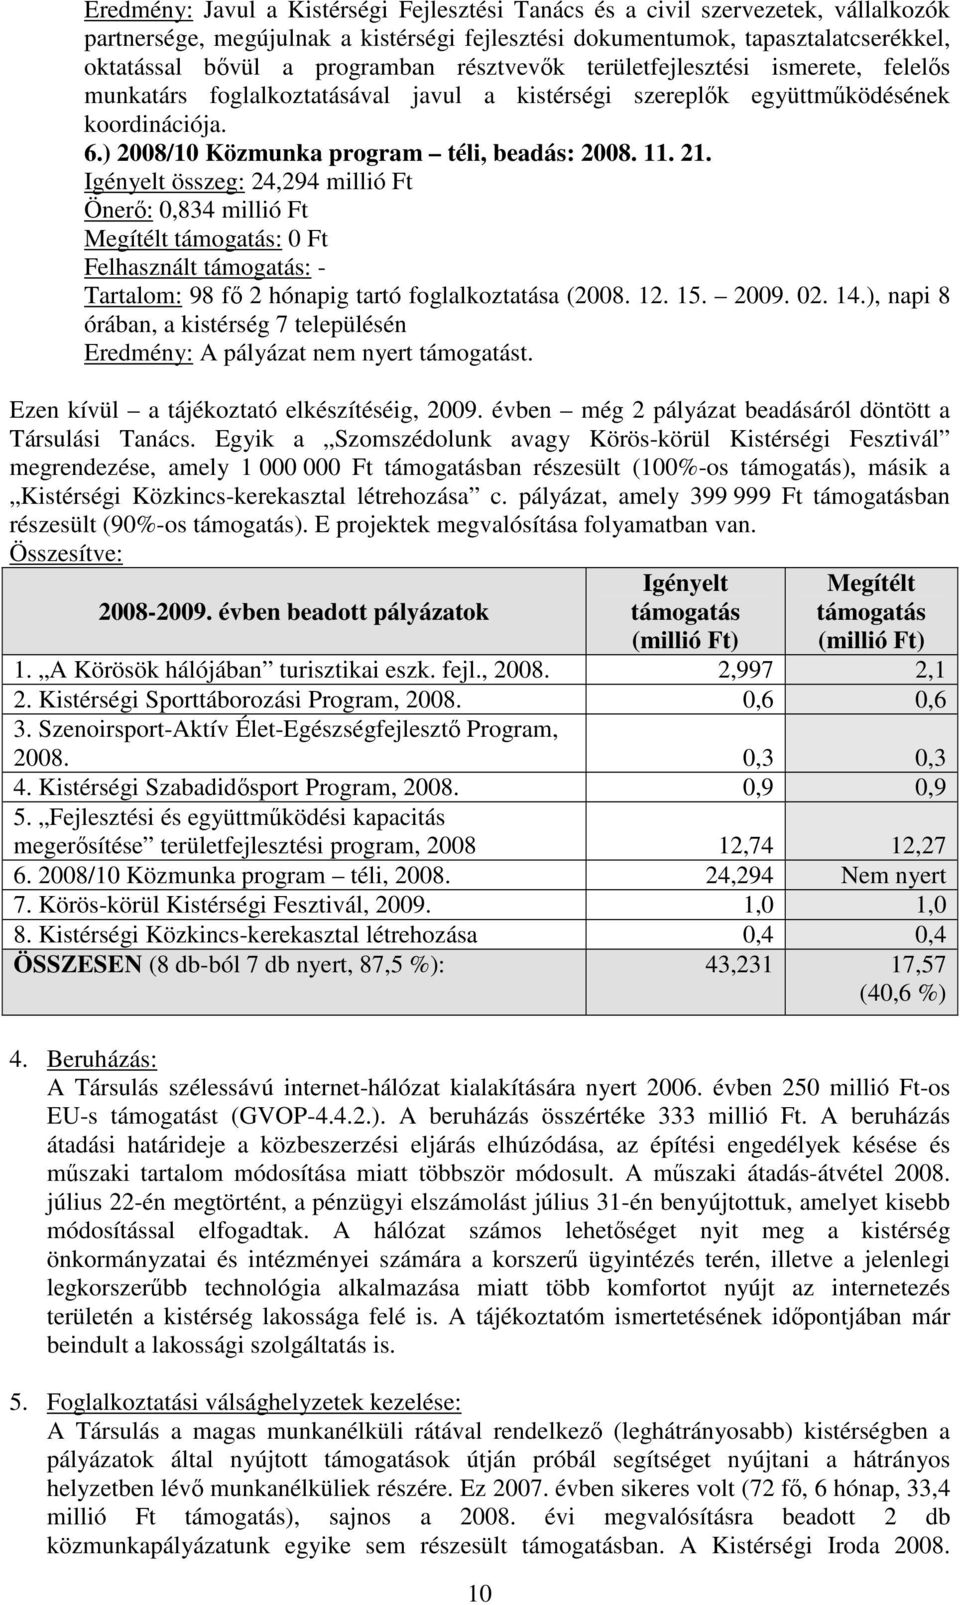 Igényelt összeg: 24,294 millió Ft Önerı: 0,834 millió Ft Megítélt támogatás: 0 Ft Felhasznált támogatás: - Tartalom: 98 fı 2 hónapig tartó foglalkoztatása (2008. 12. 15. 2009. 02. 14.